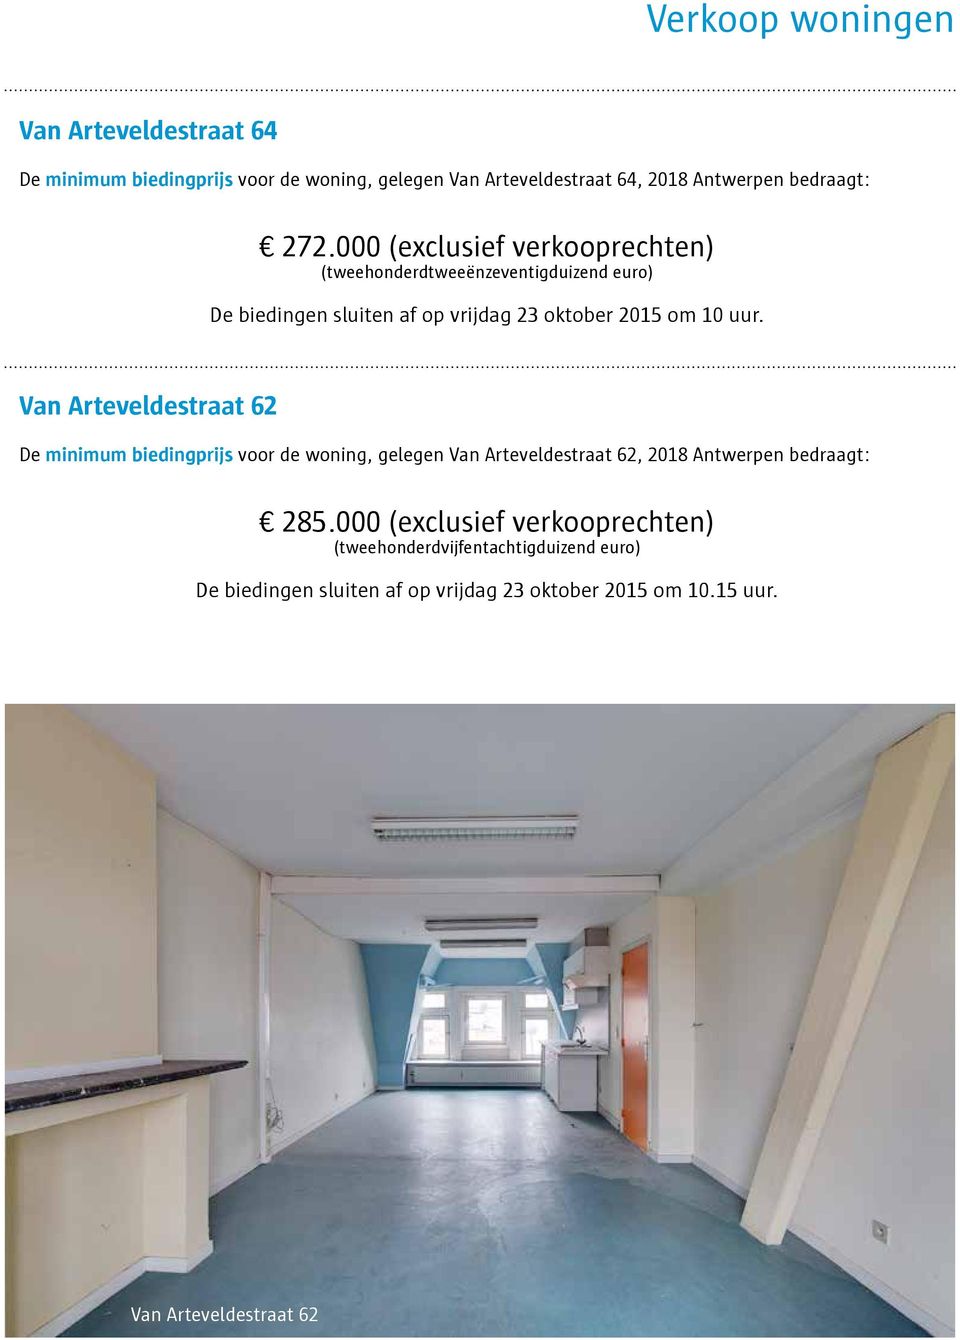 Van Arteveldestraat 62 De minimum biedingprijs voor de woning, gelegen Van Arteveldestraat 62, 2018 Antwerpen bedraagt: 285.